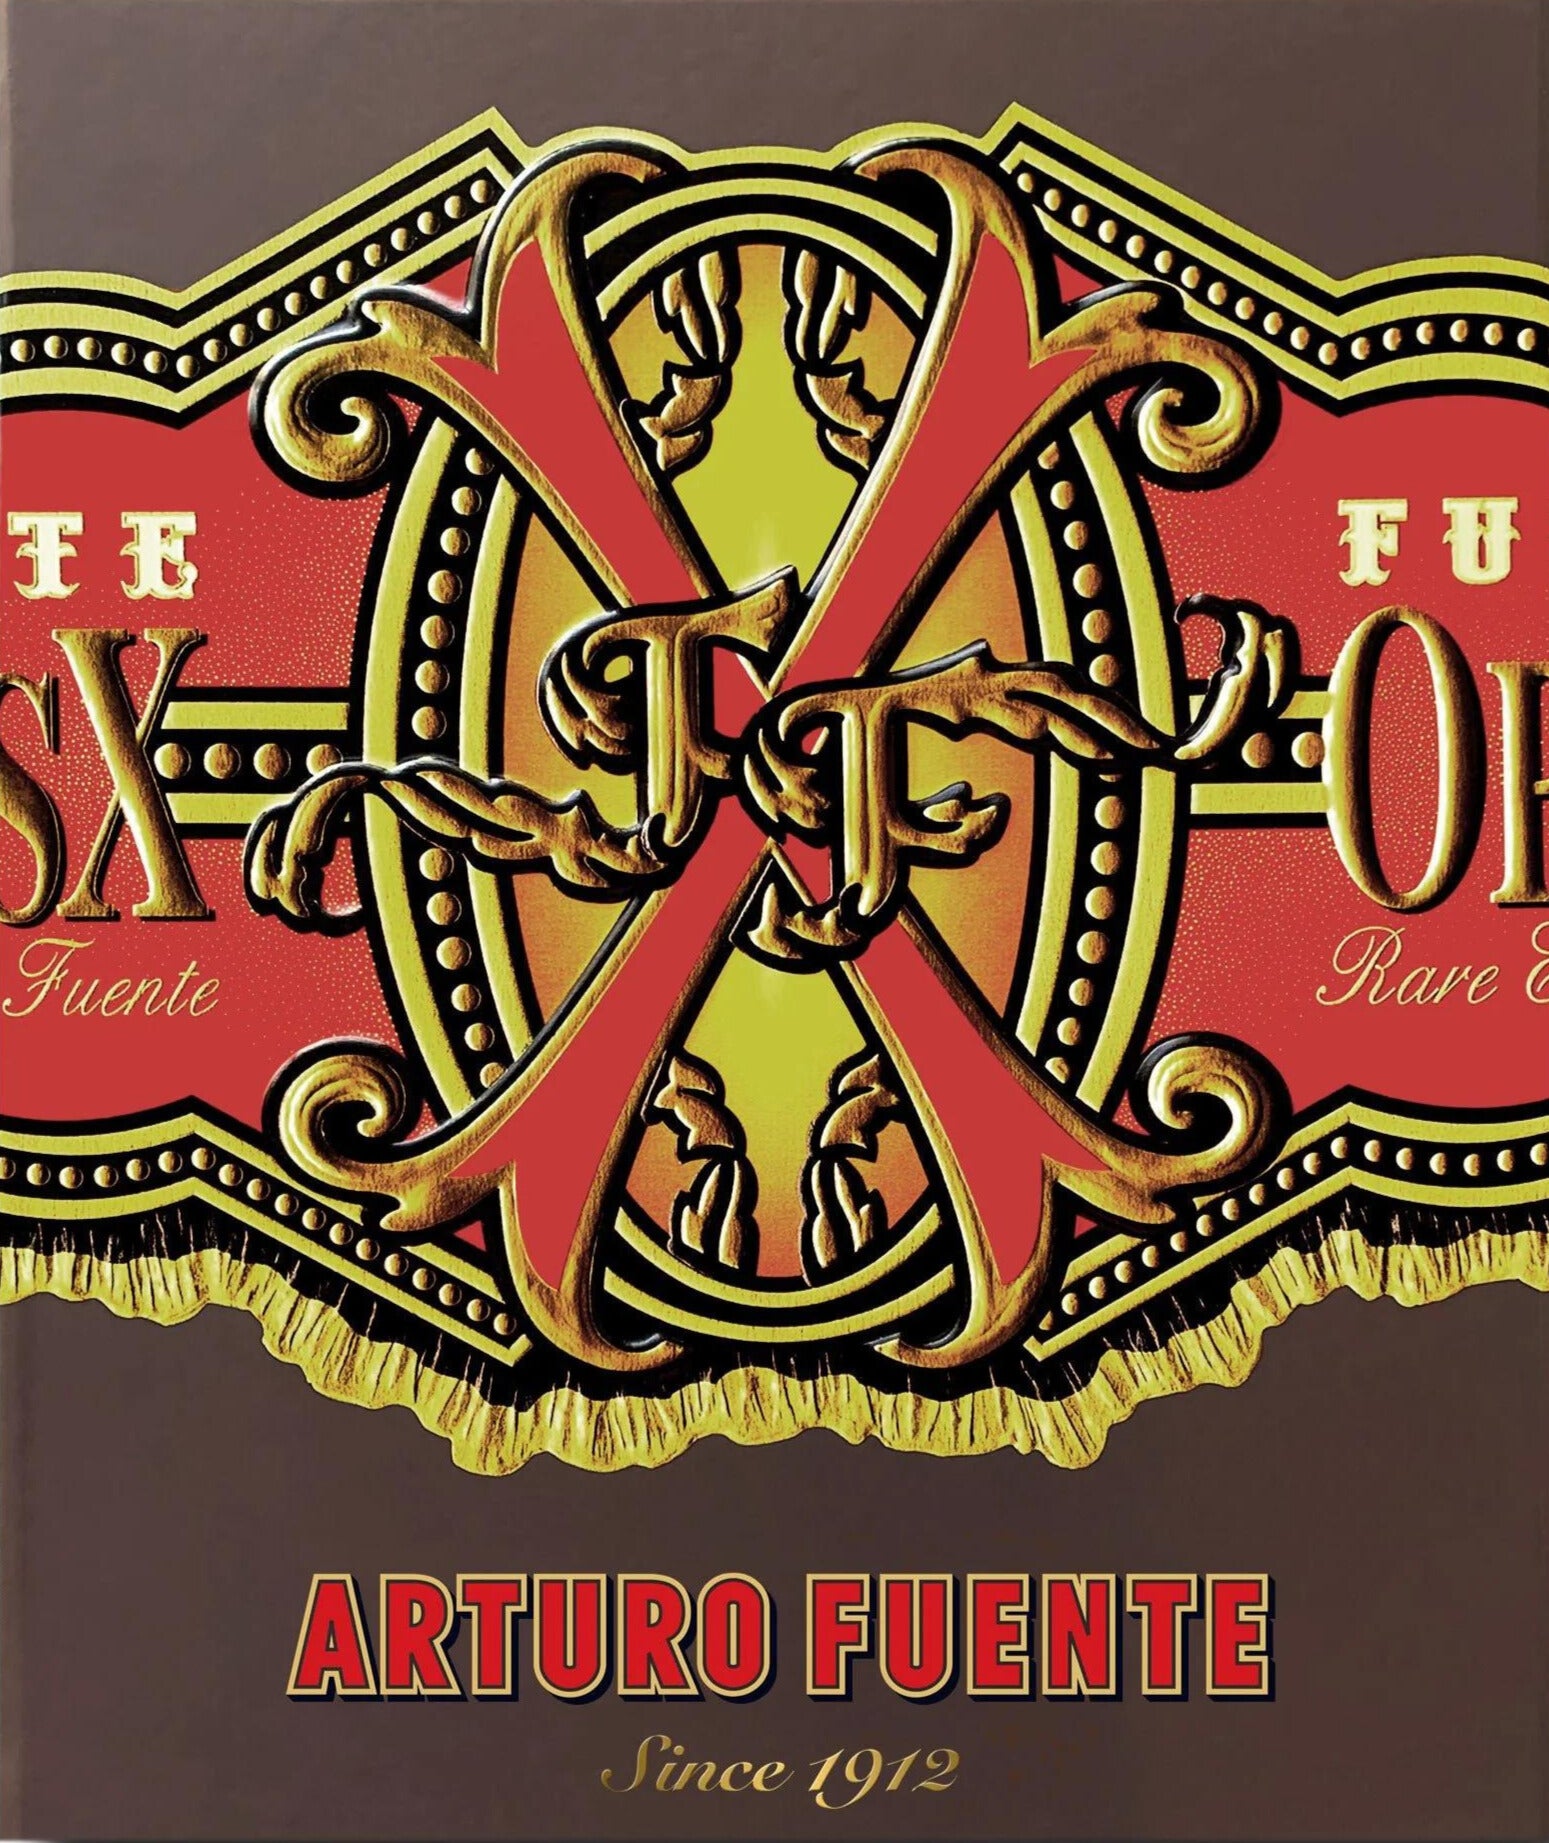 Arturo Fuente: Since 1912